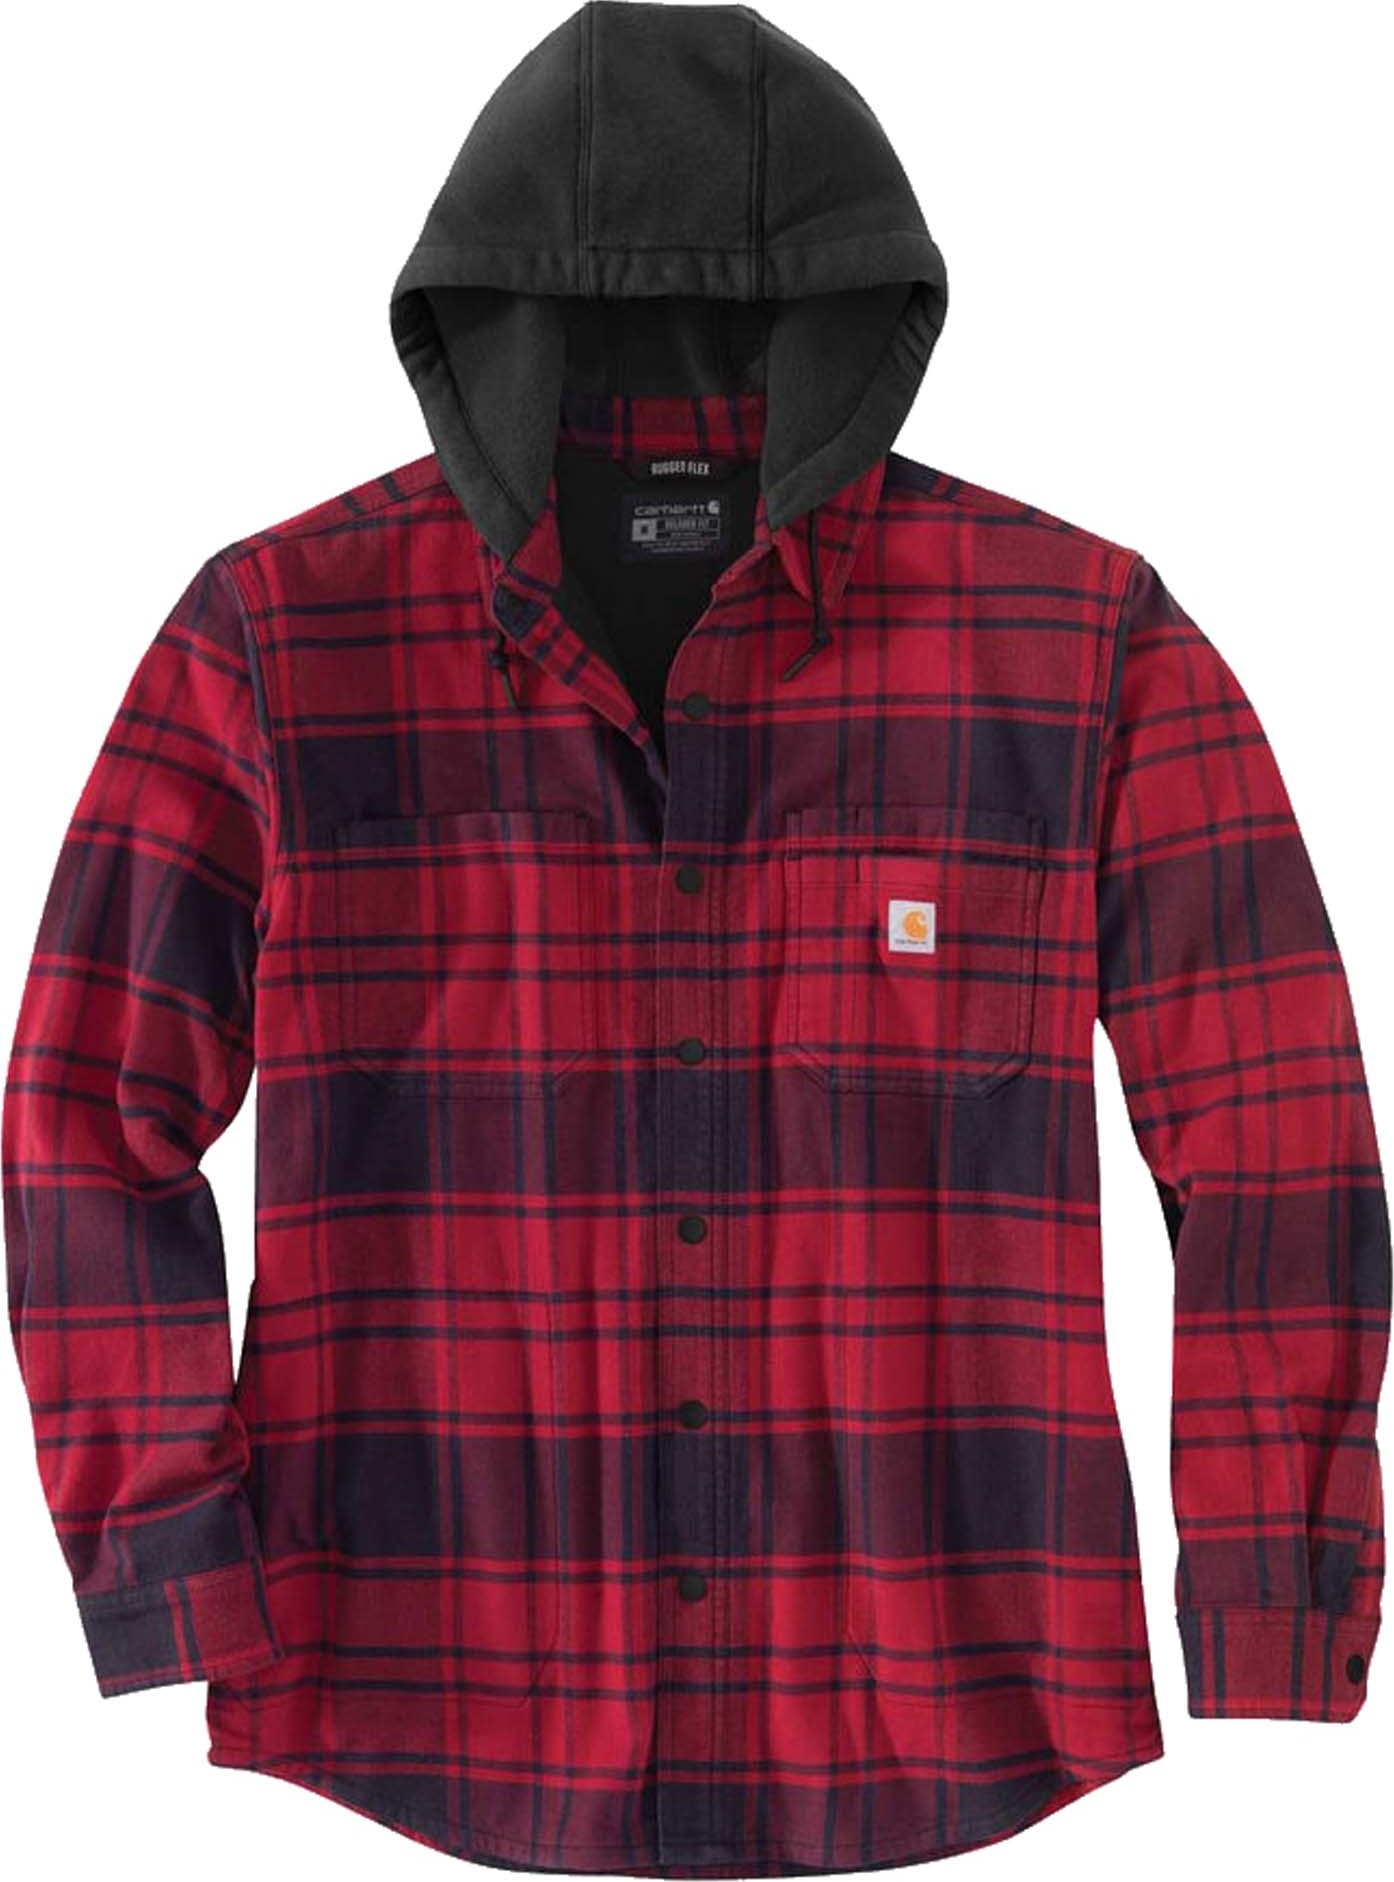 Carhartt Carhartt Men's Flannel Fleece Lined Hooded Shirt Jacket Oxblood L, OXBLOOD